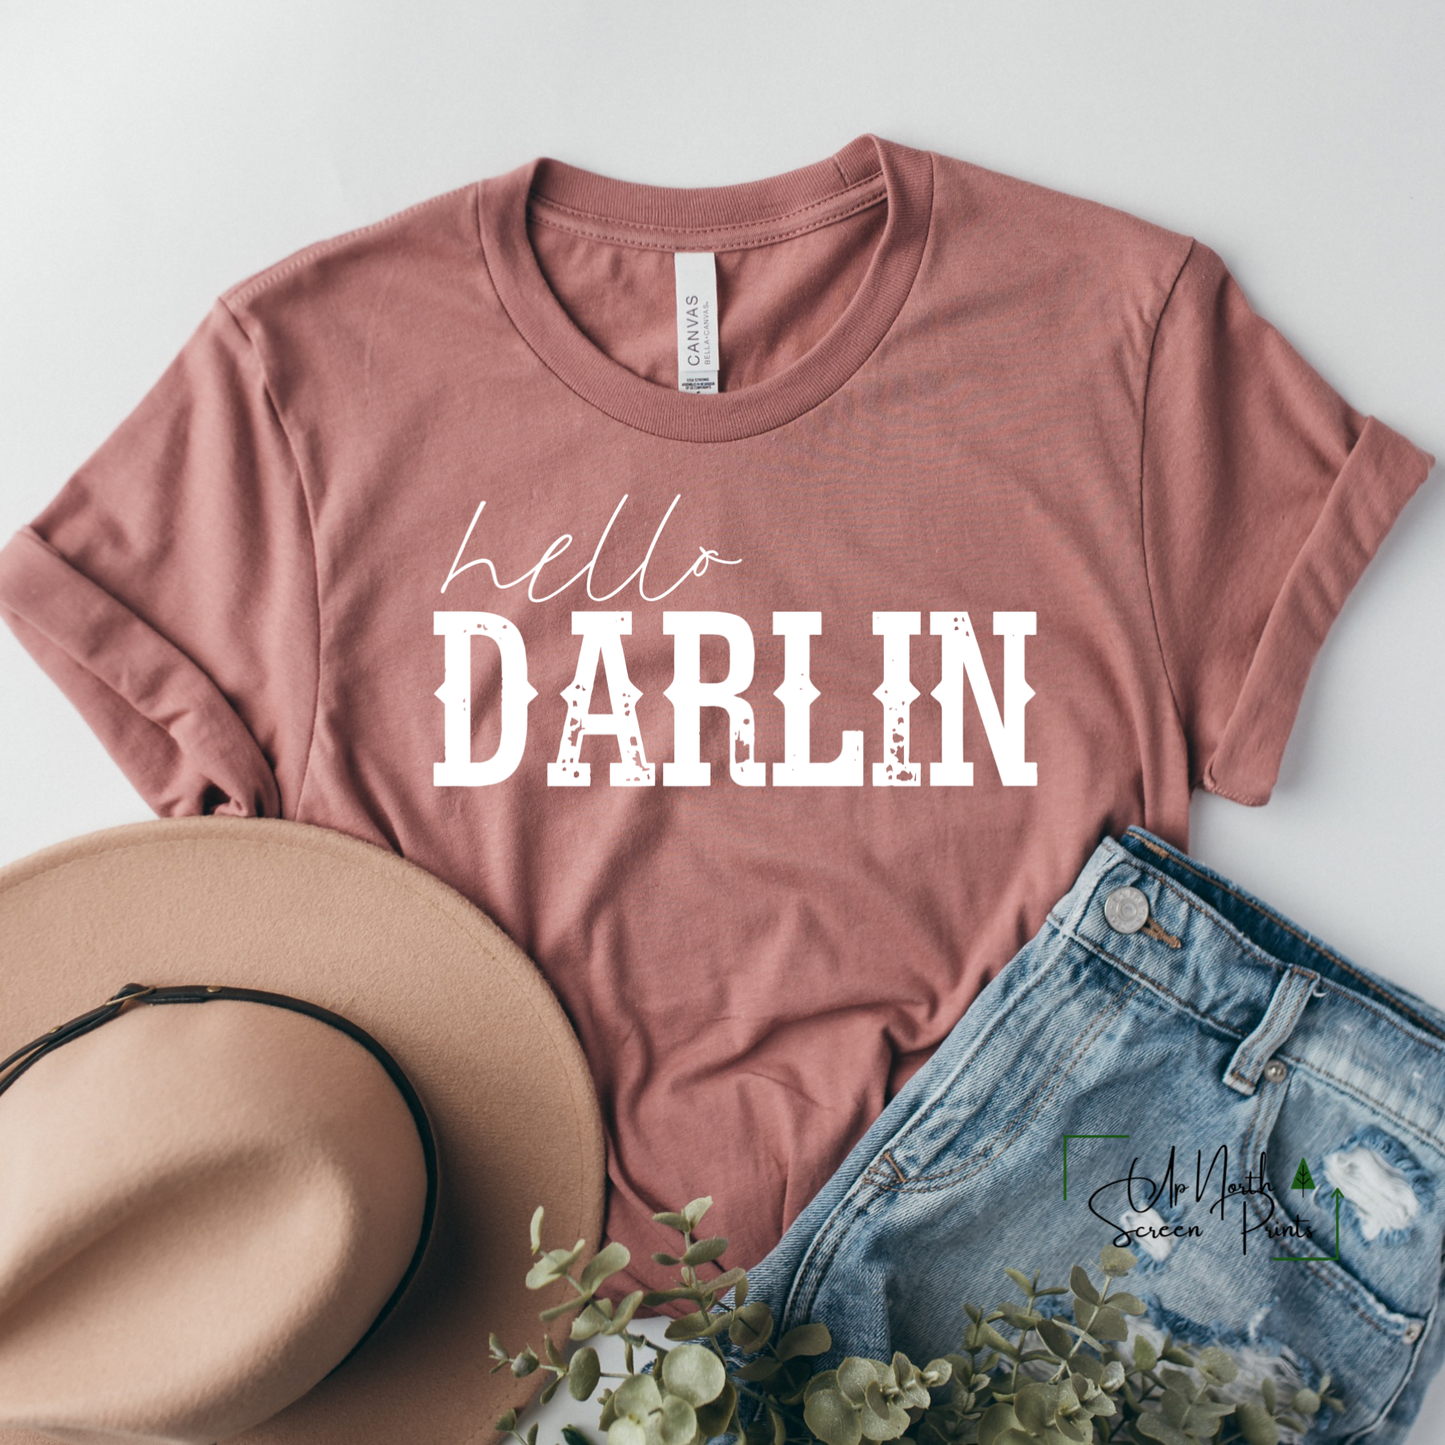 Hello darlin